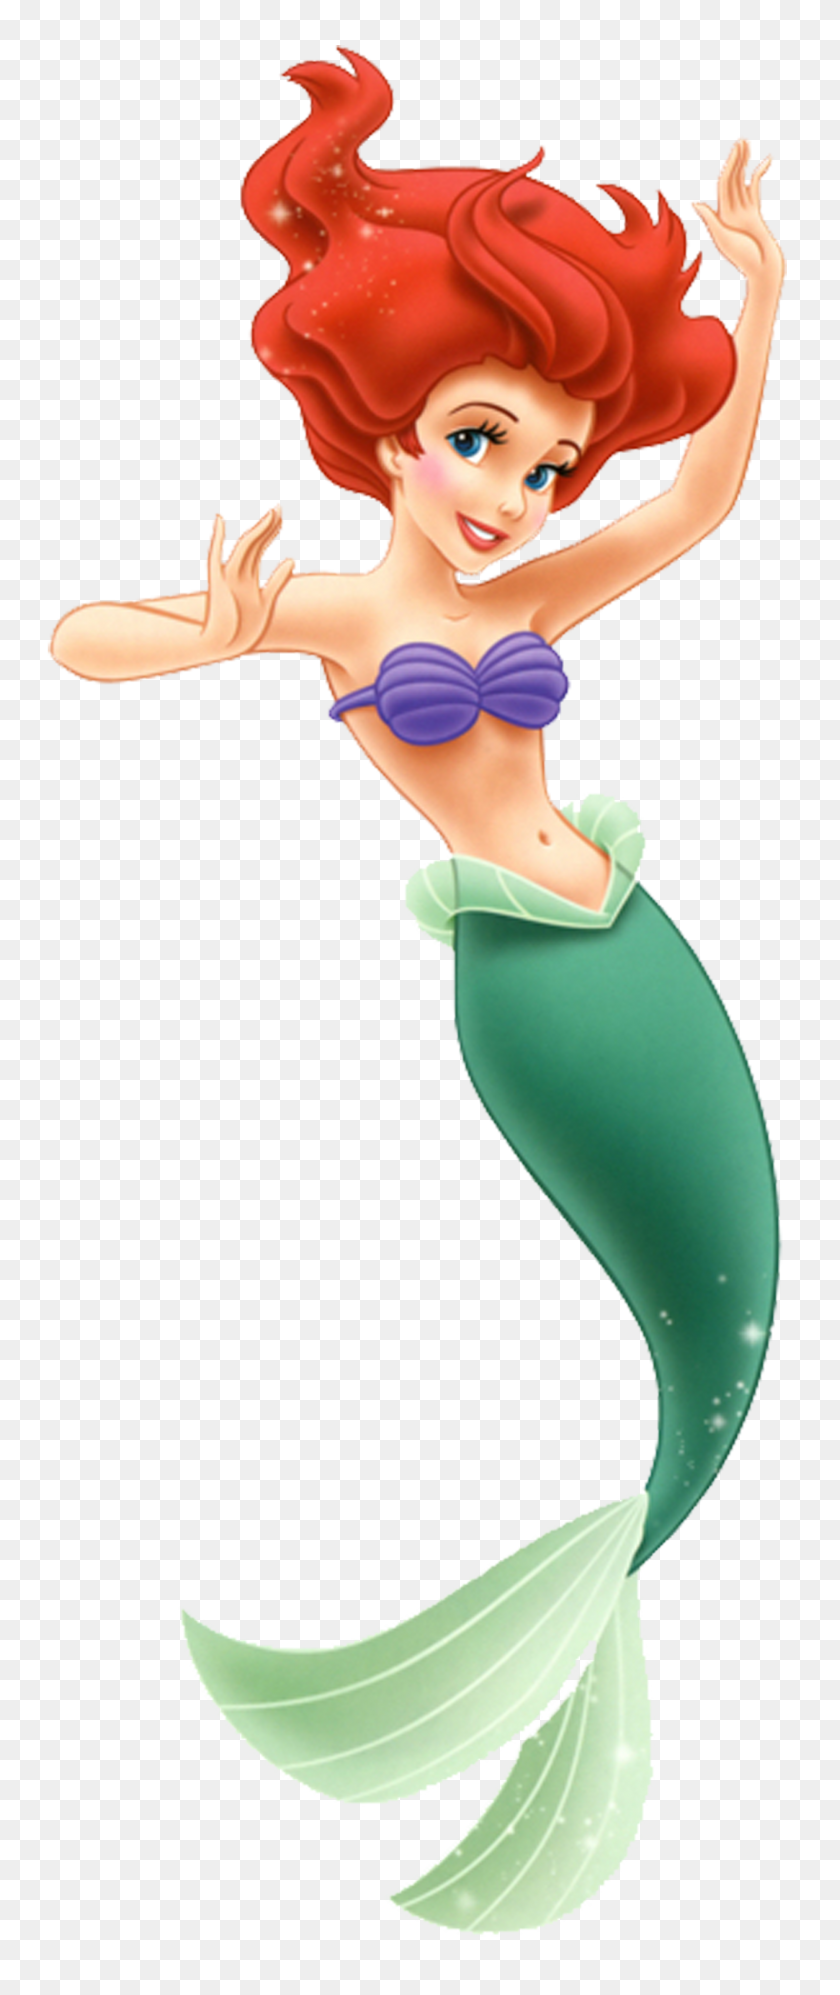 1753x4350 La Sirenita Disney Princess - Принцесса Жасмин Клипарт